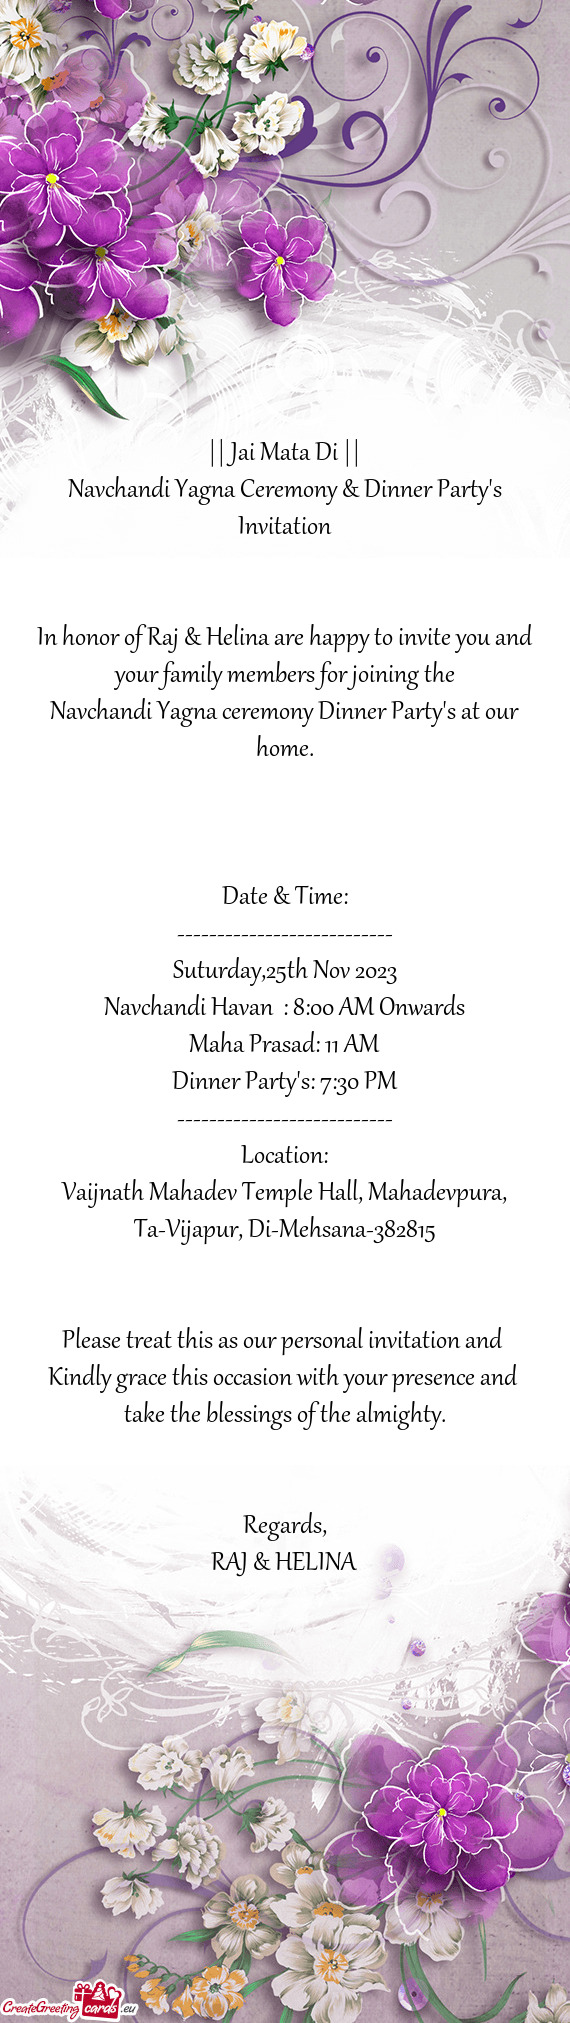 Navchandi Yagna Ceremony & Dinner Party's Invitation